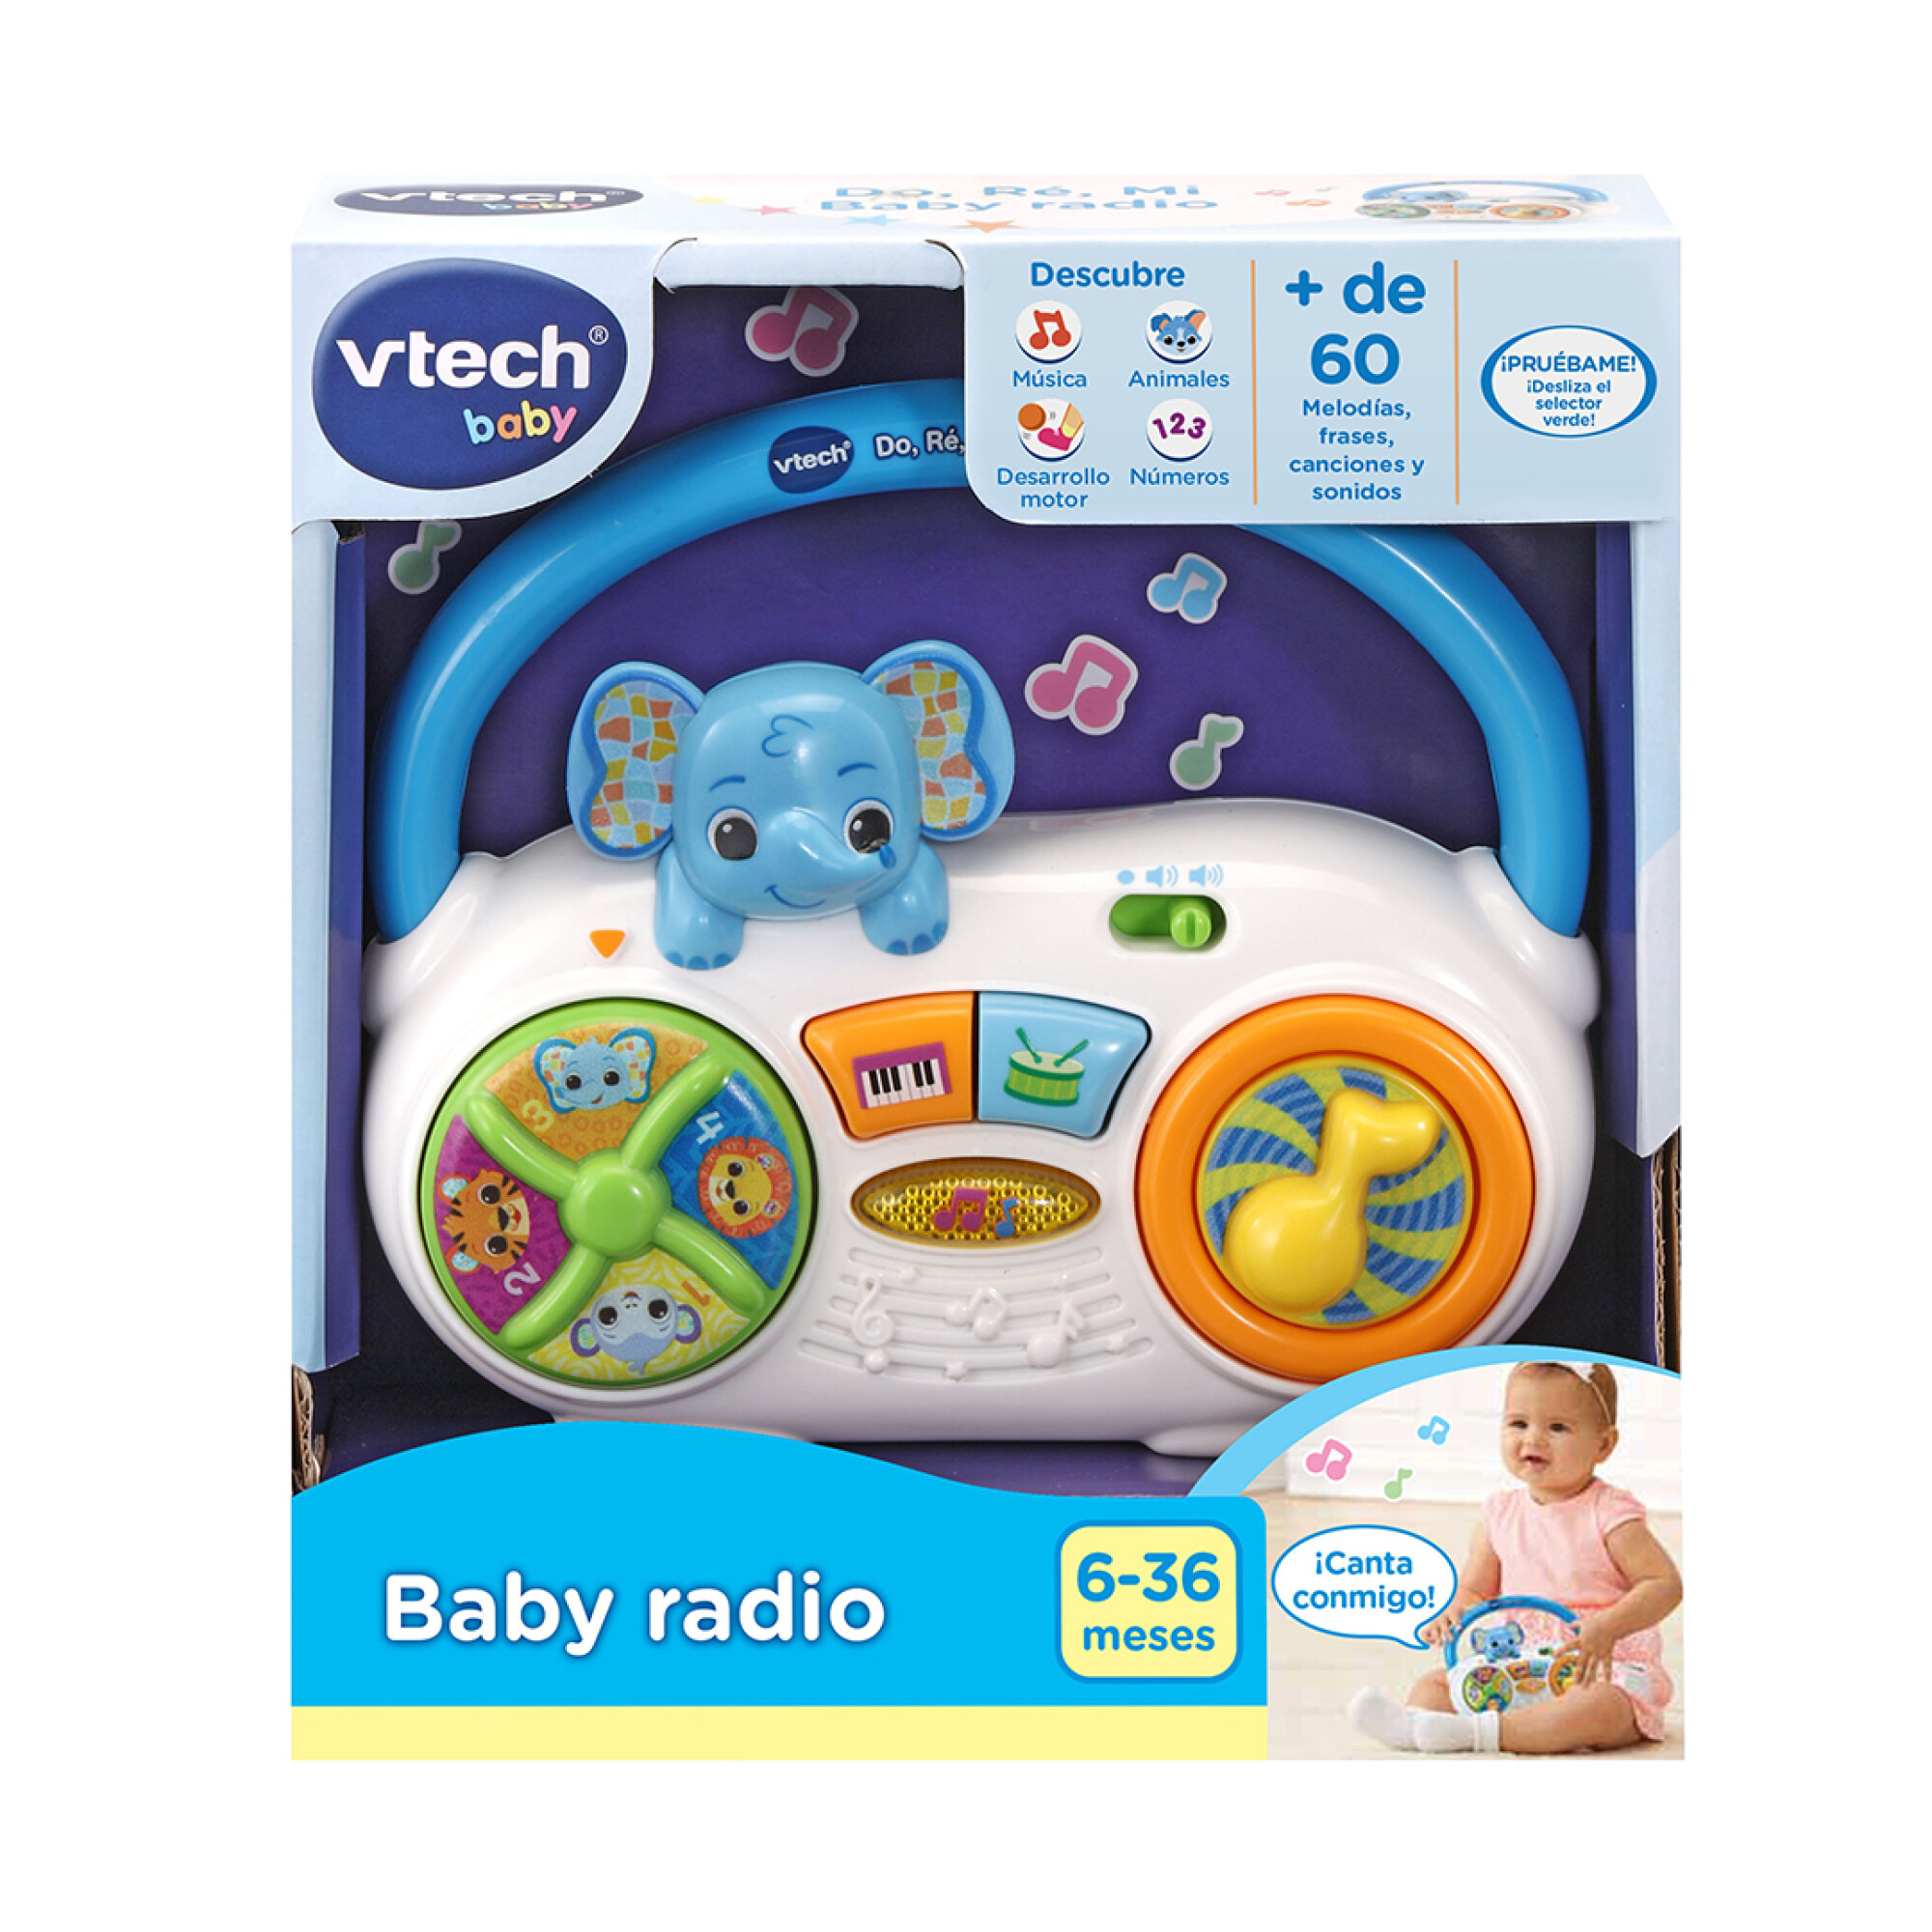 VTech Baby Baby radio – NAPTOYSHOP